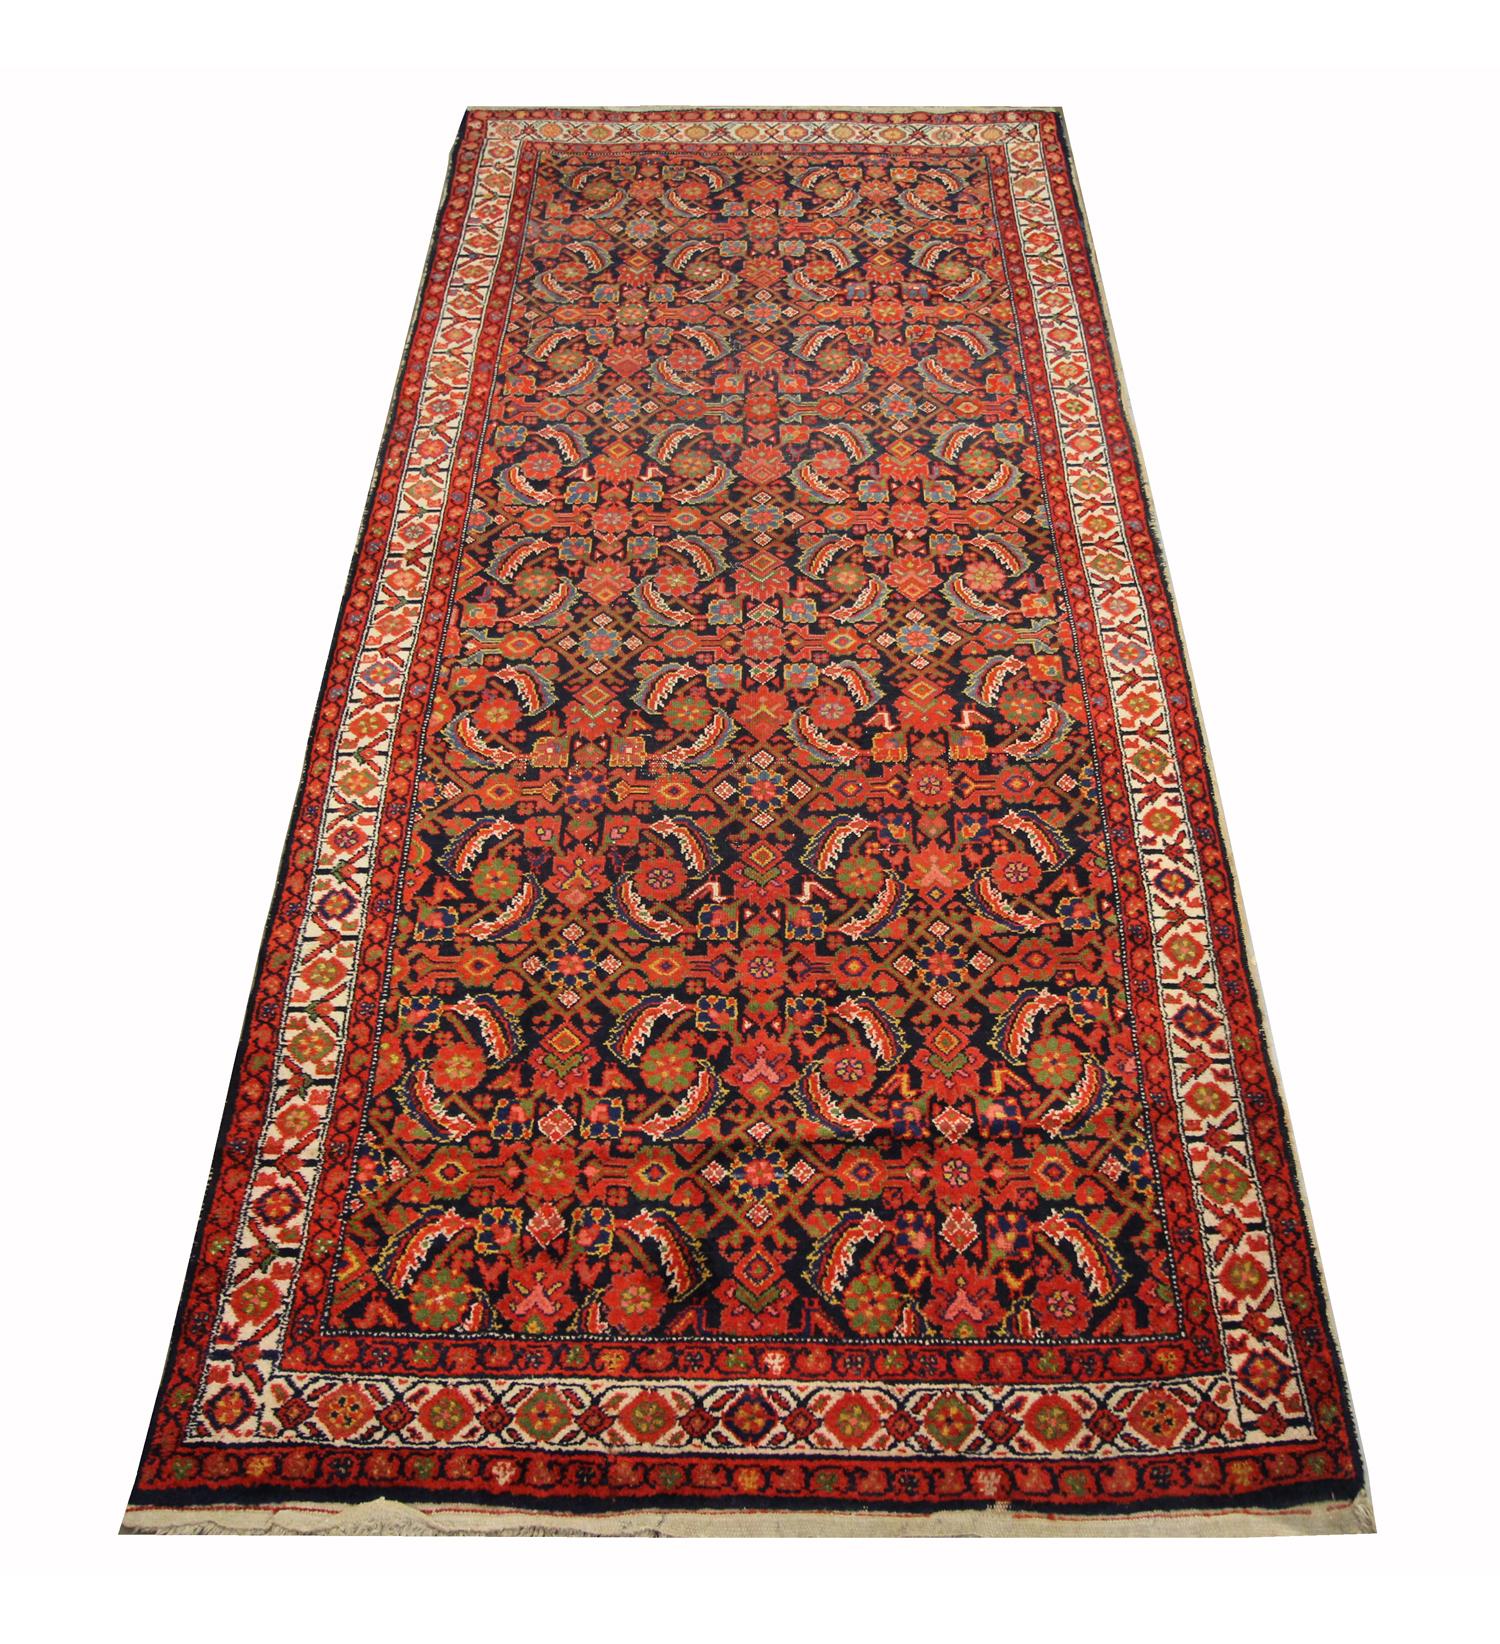 Ce beau tapis en laine tissé à la main a été tissé en Azerbaïdjan dans les années 1880. Le motif central a été tissé avec une riche palette de couleurs, dont le rouille, le bleu, l'ivoire et le rouge qui composent le motif floral symétrique. La